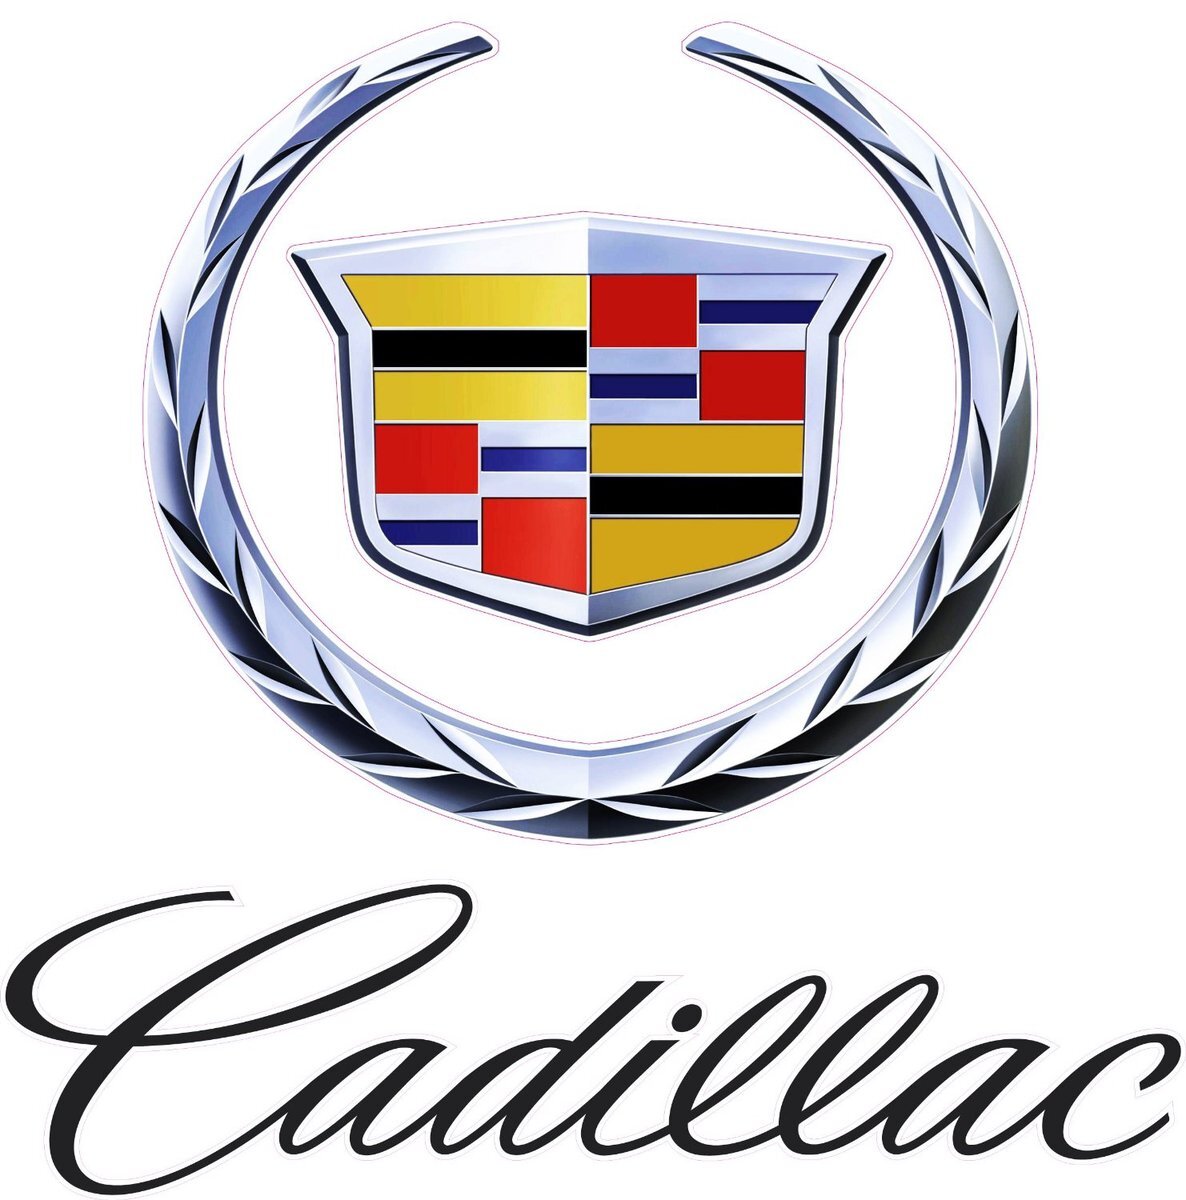 Cadillac-Emblem-with-Script-Decal_1200x1200 (1).jpg